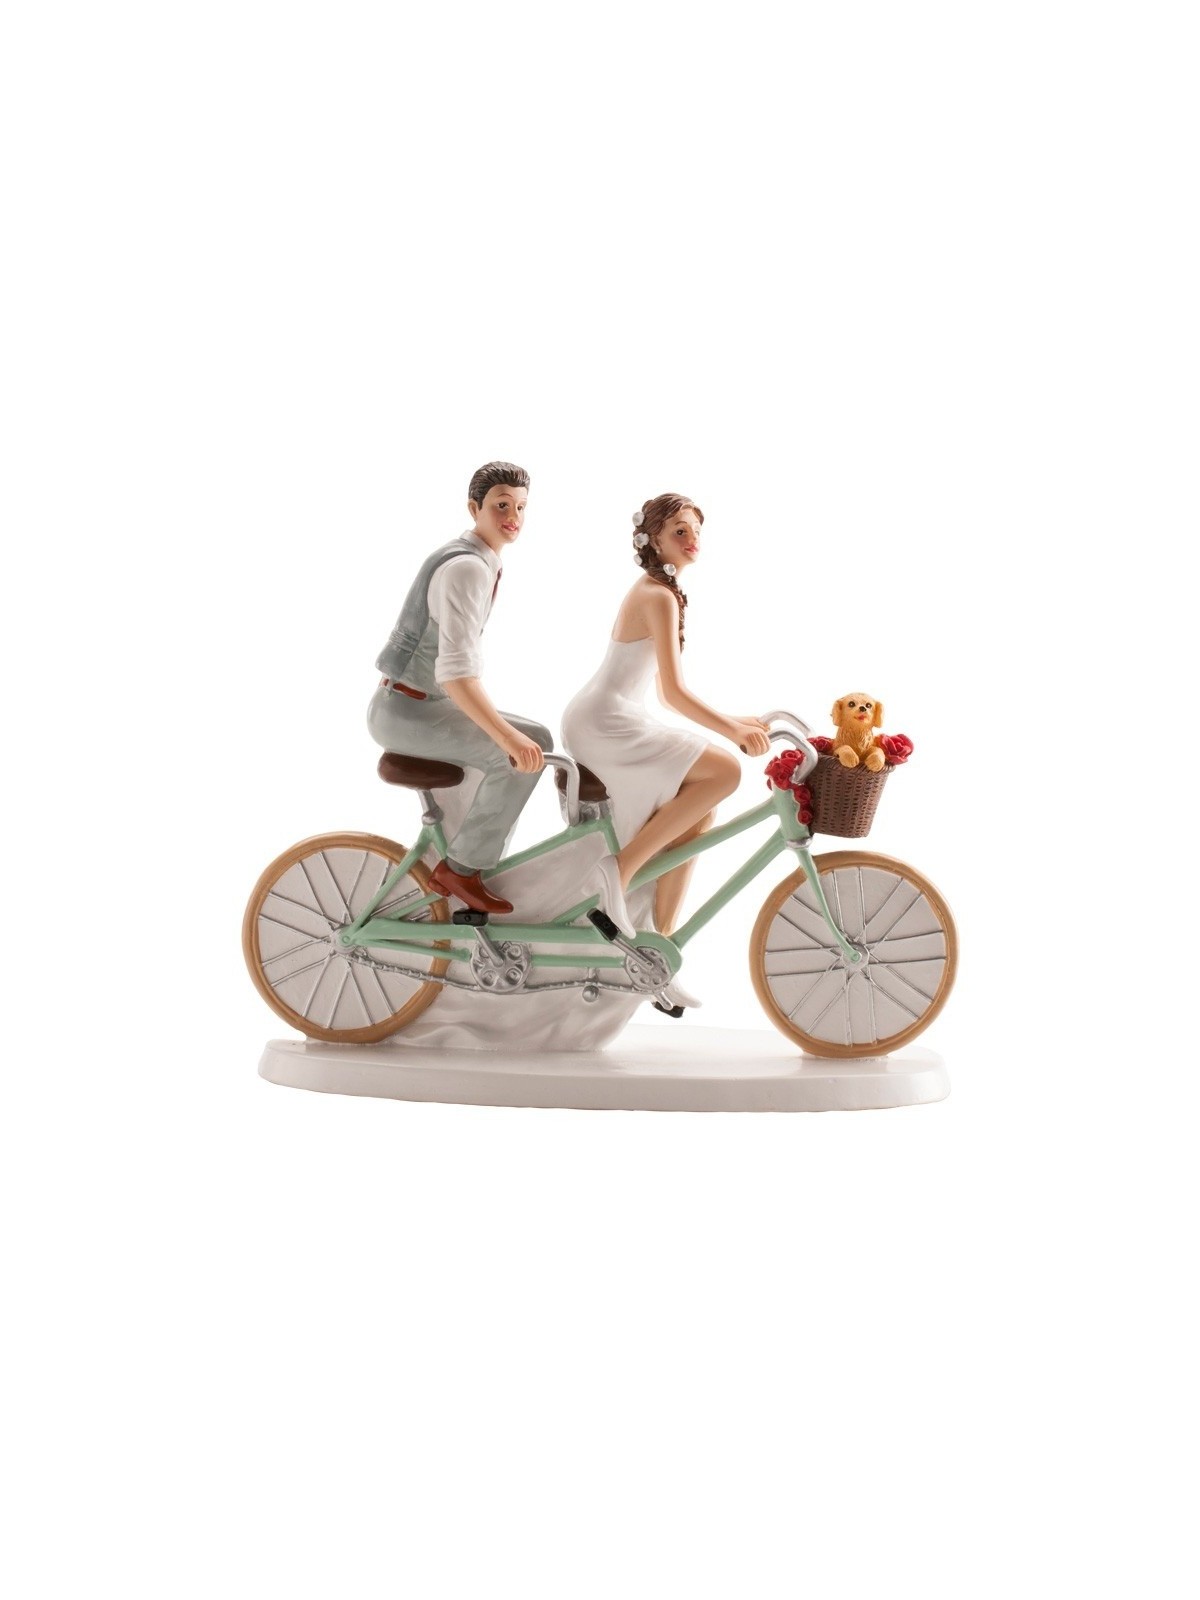 Svatební figurky - na kole